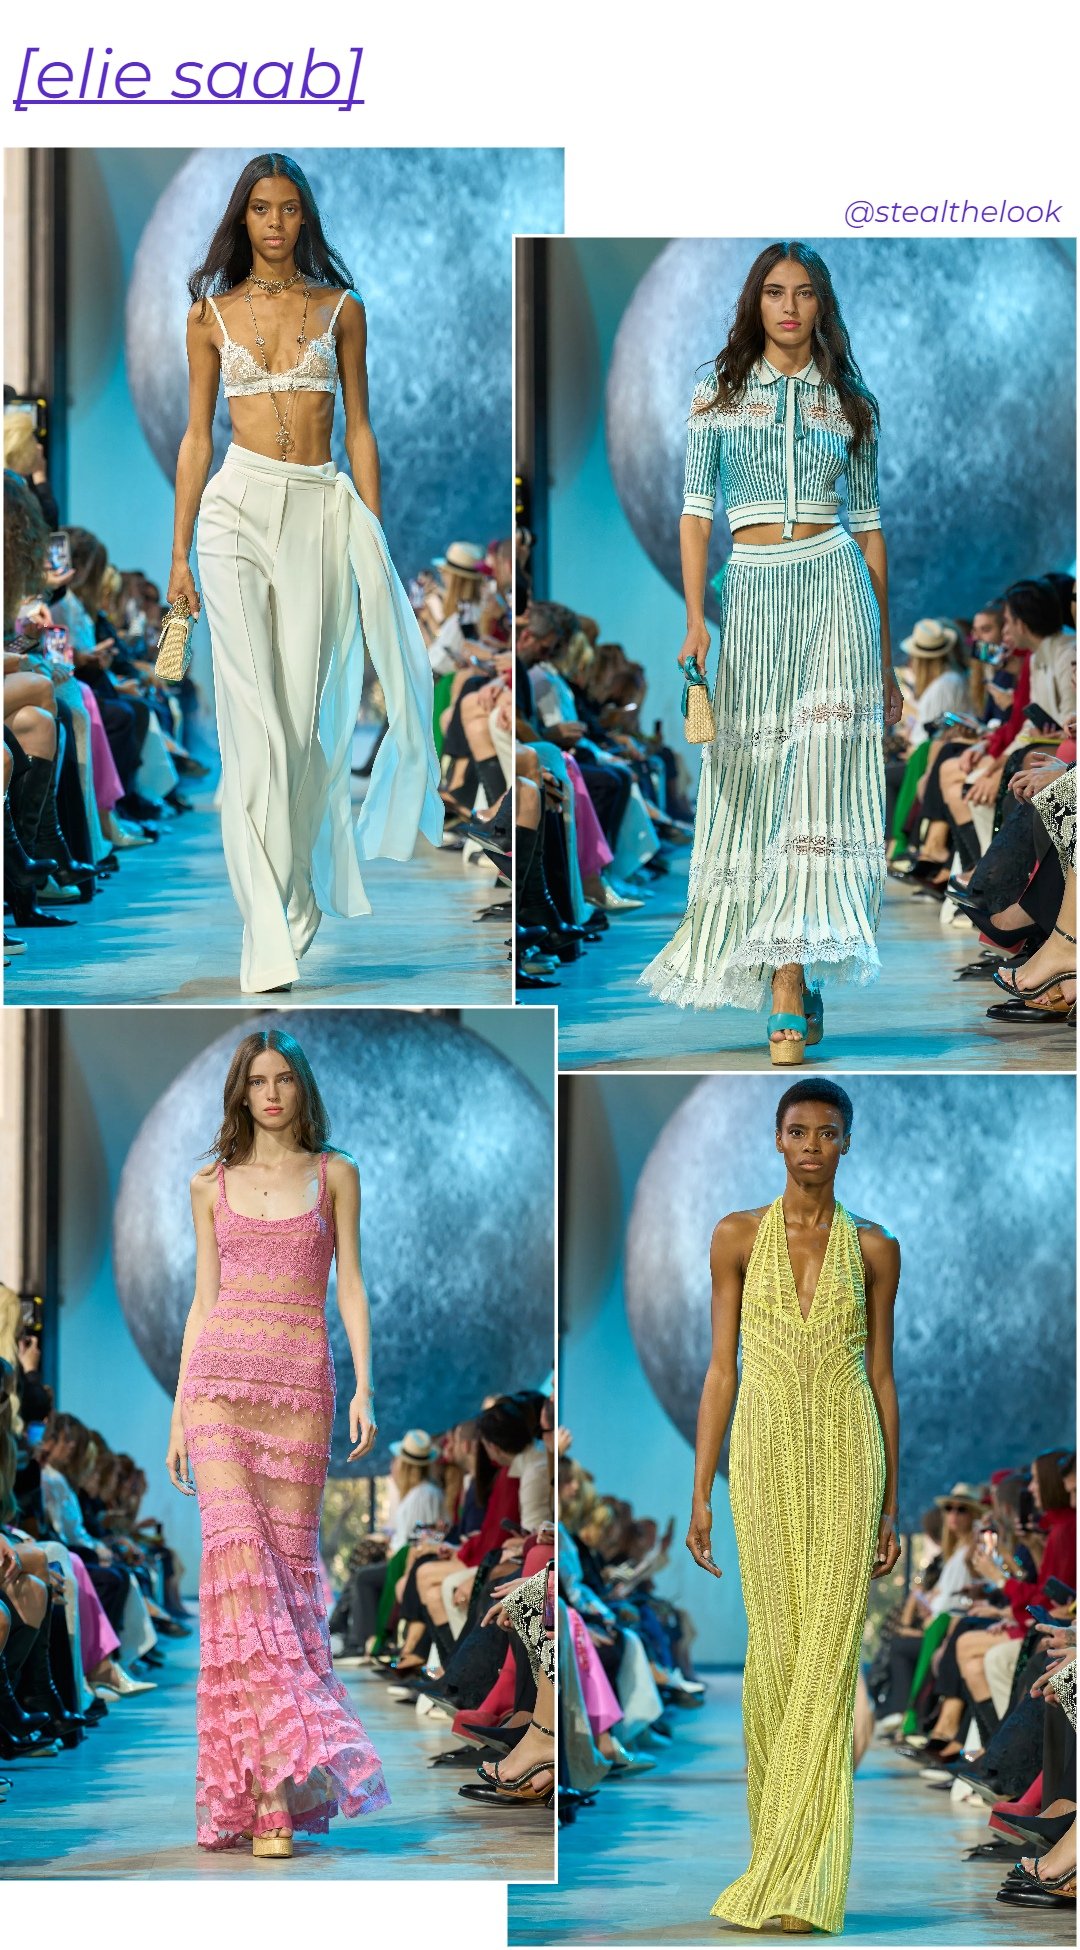 Elie Saab - roupas diversas - Paris Fashion Week - verão - colagem de imagens - https://stealthelook.com.br